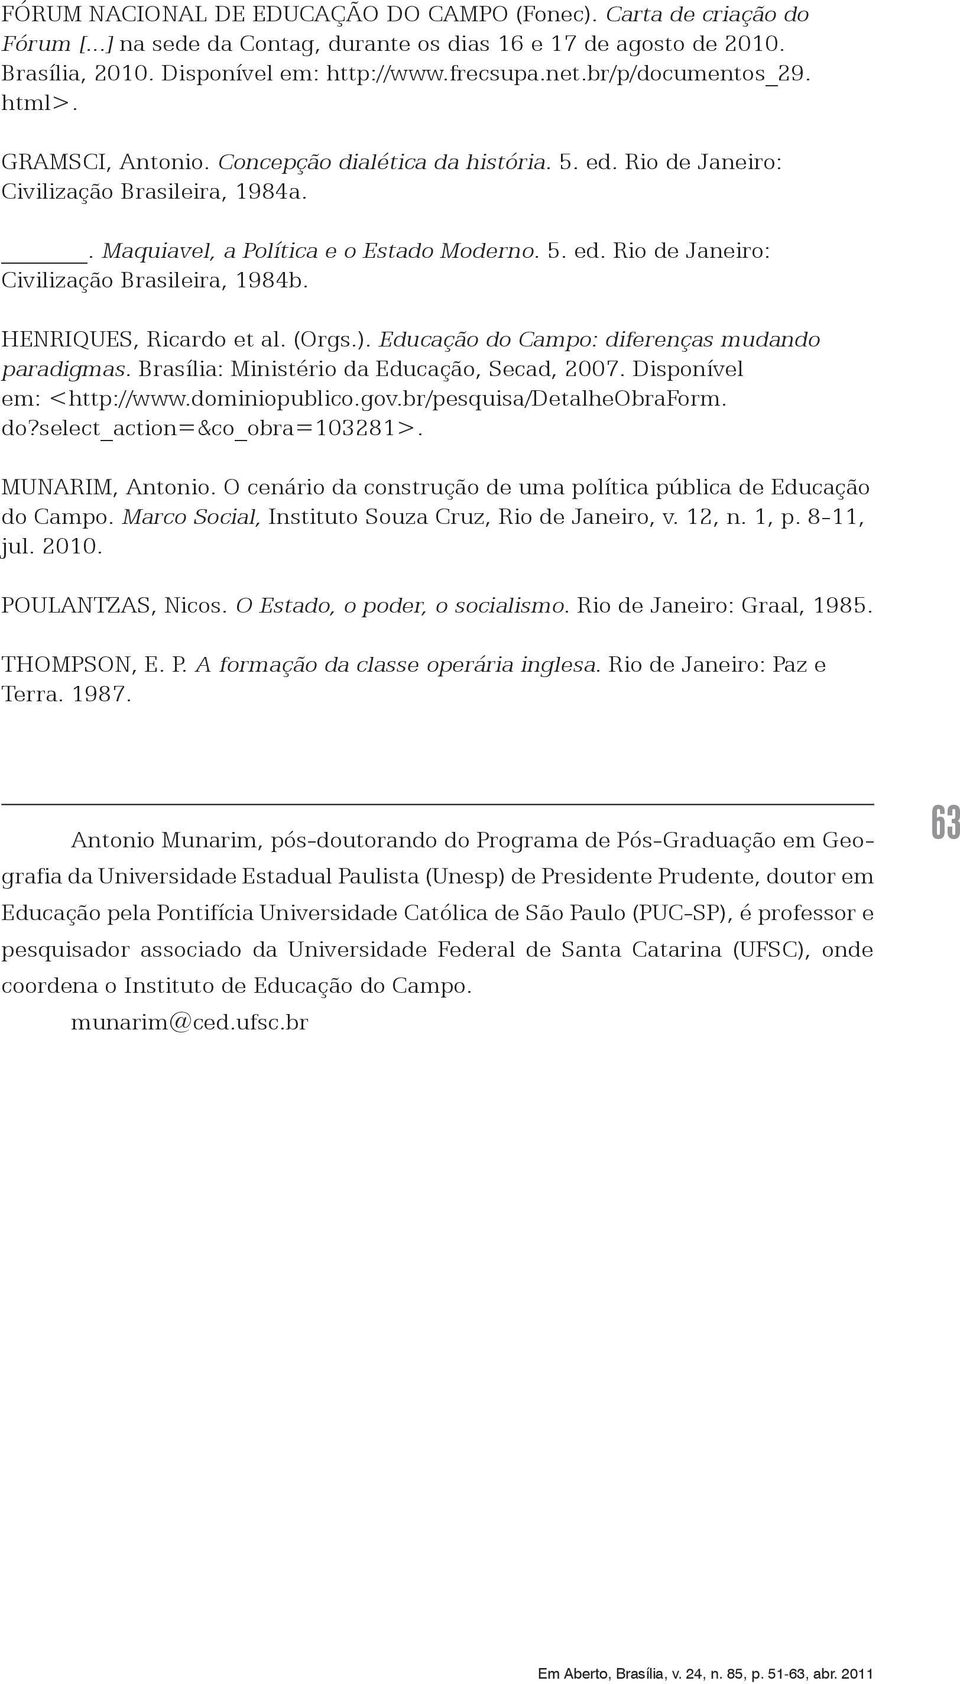 HENRIQUES, Ricardo et al. (Orgs.). Educação do Campo: diferenças mudando paradigmas. Brasília: Ministério da Educação, Secad, 2007. Disponível em: <http://www.dominiopublico.gov.